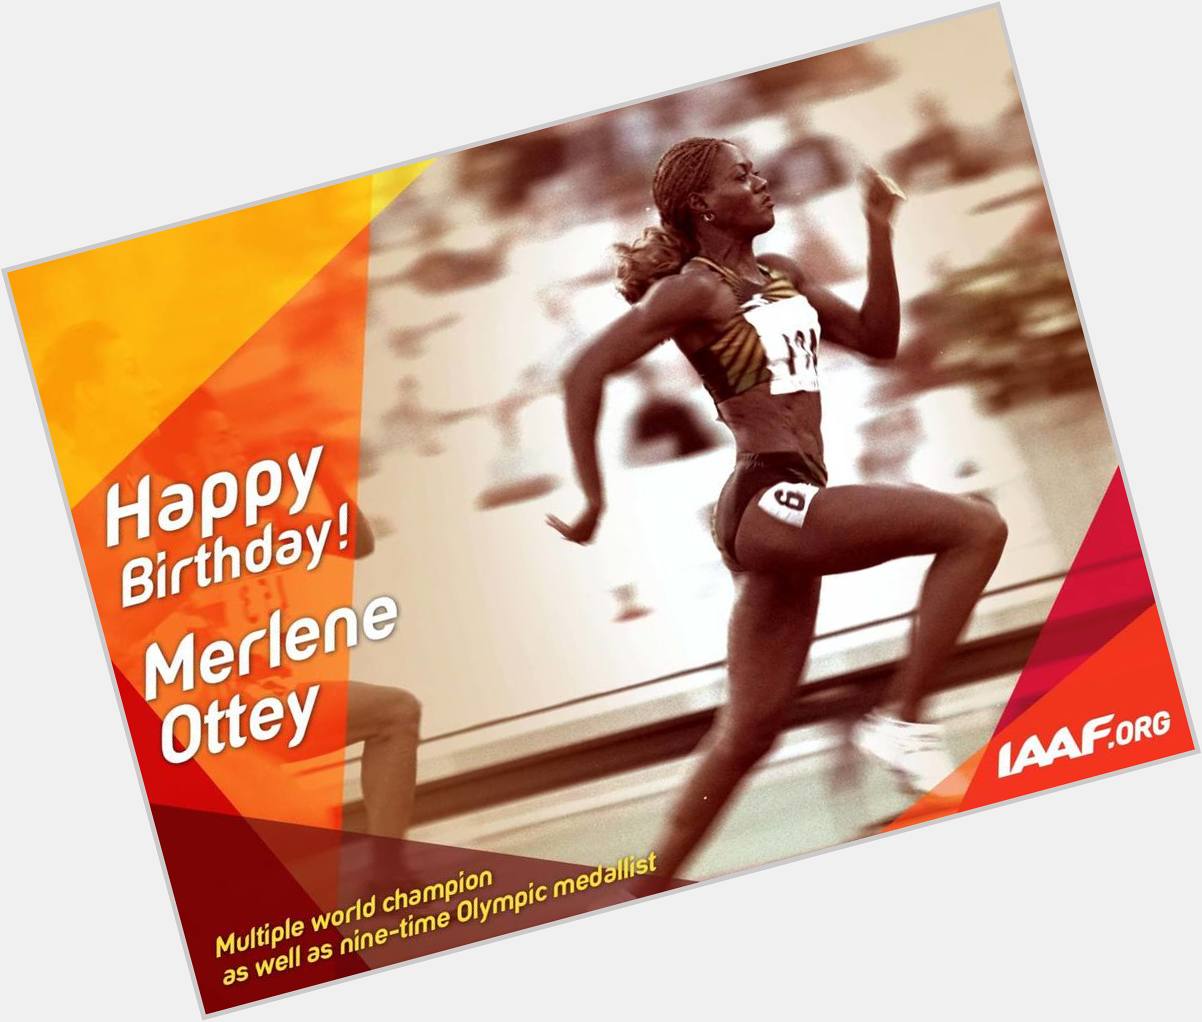 Happy birthday to Merlene Ottey! 
More:  